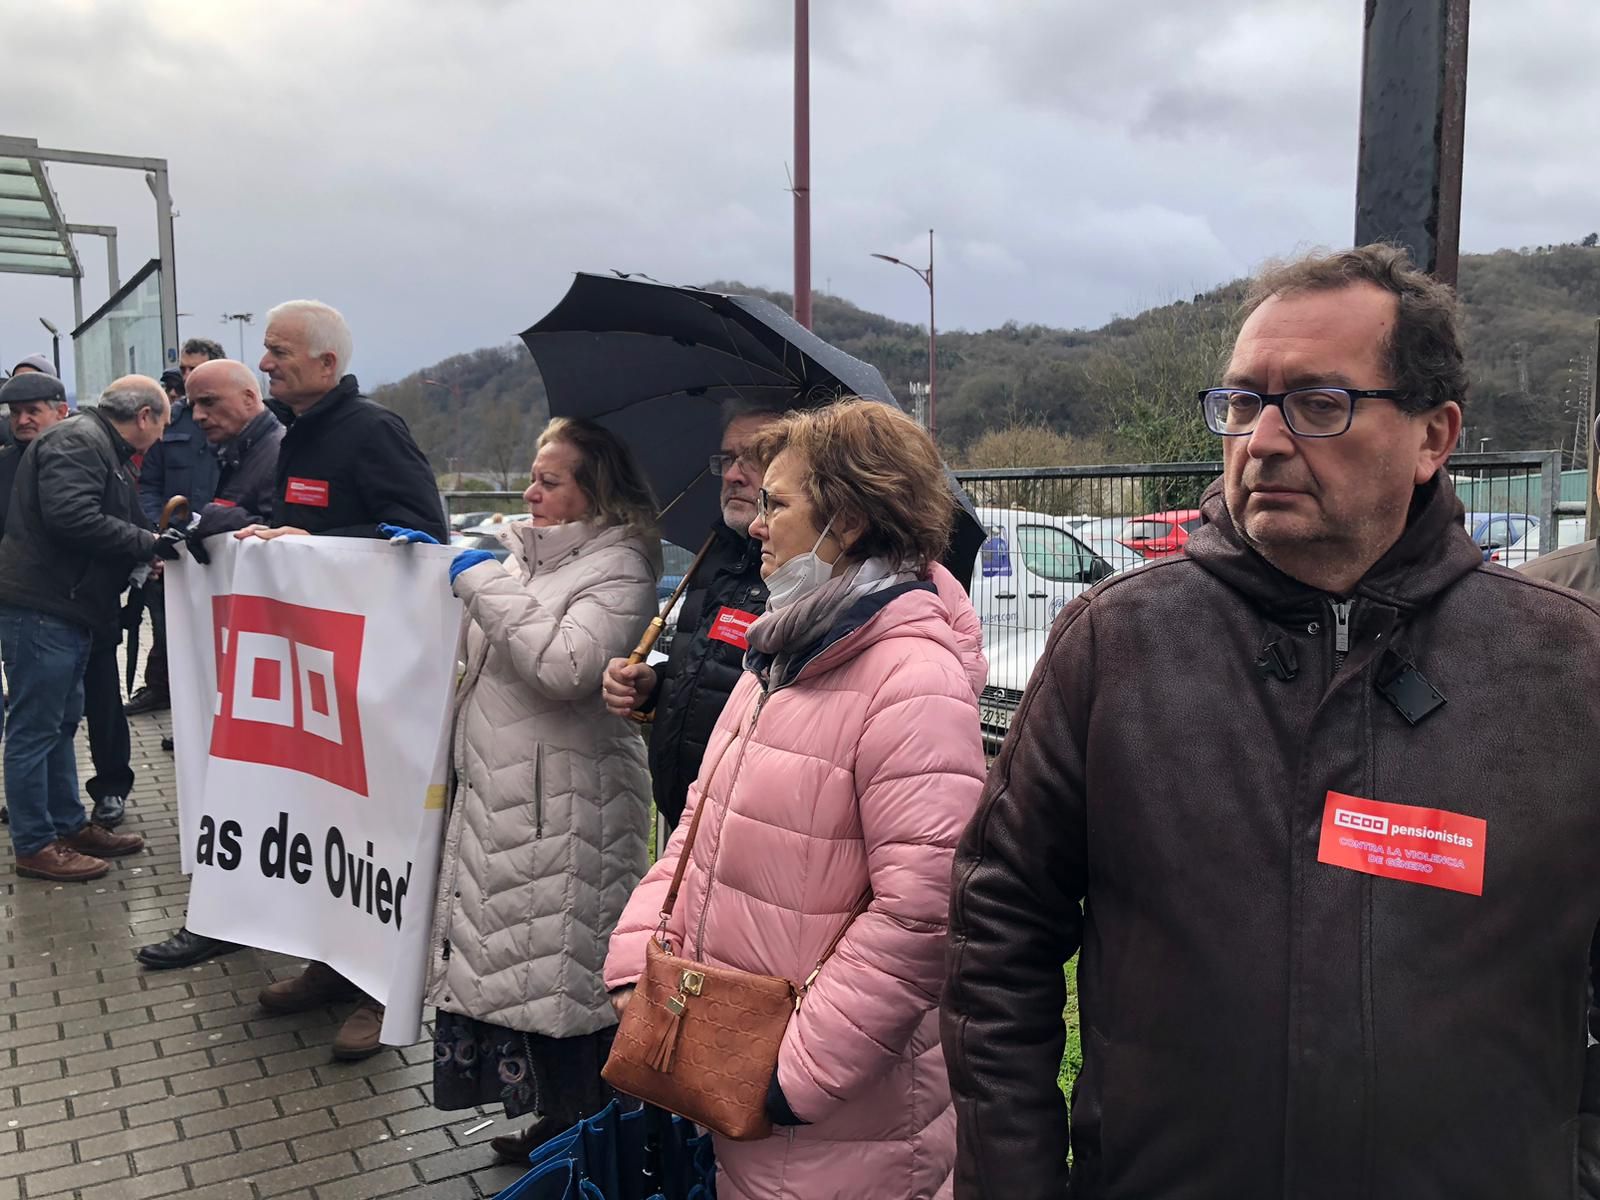 Protesta de los pensionistas en Langreo para pedir mejoras en la sanidad